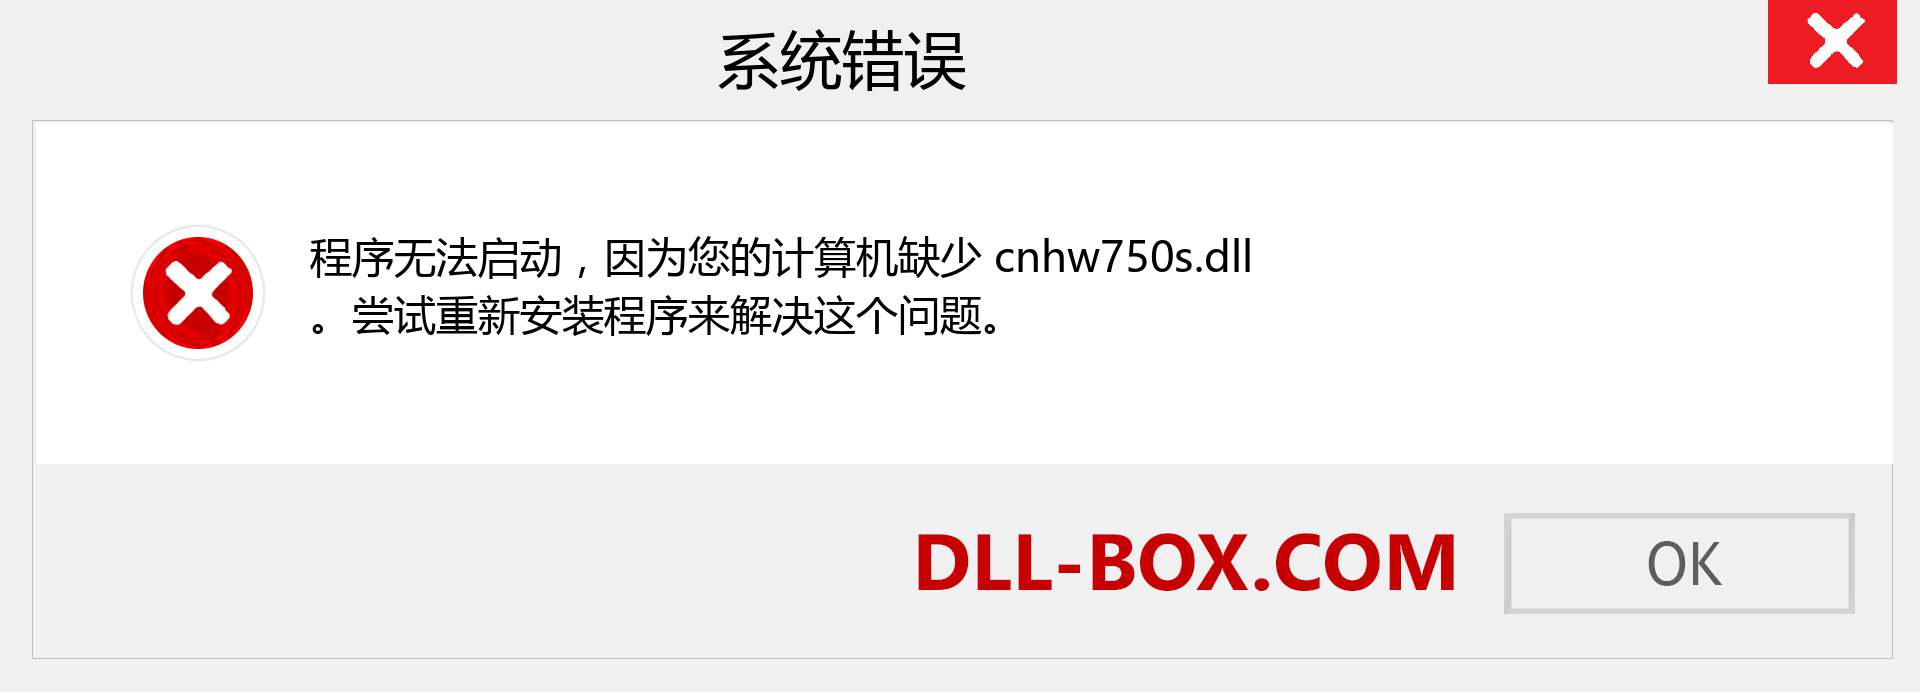 cnhw750s.dll 文件丢失？。 适用于 Windows 7、8、10 的下载 - 修复 Windows、照片、图像上的 cnhw750s dll 丢失错误